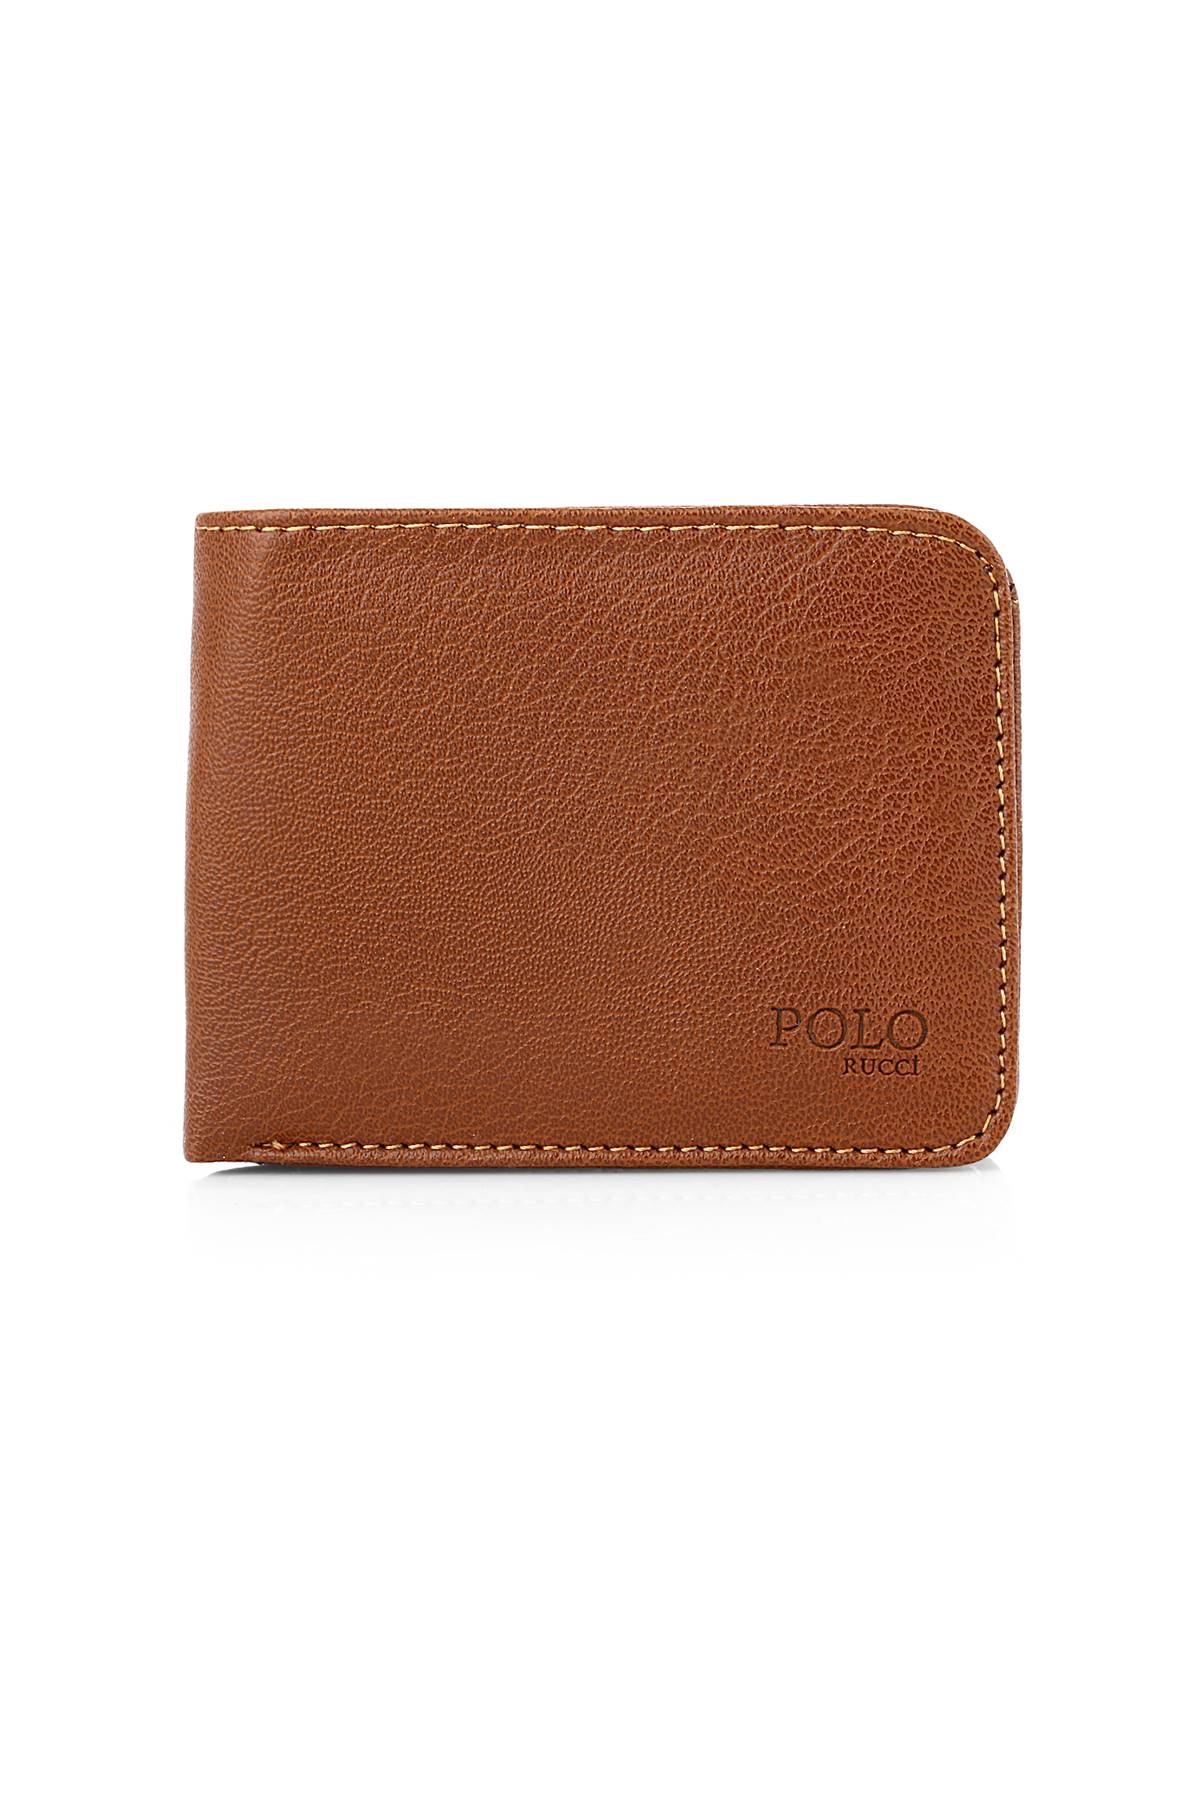 Polo Rucci Hediye Paketli Erkek Kişiye Özel Kapıda Ödeme   SETE-3016-CDN-K